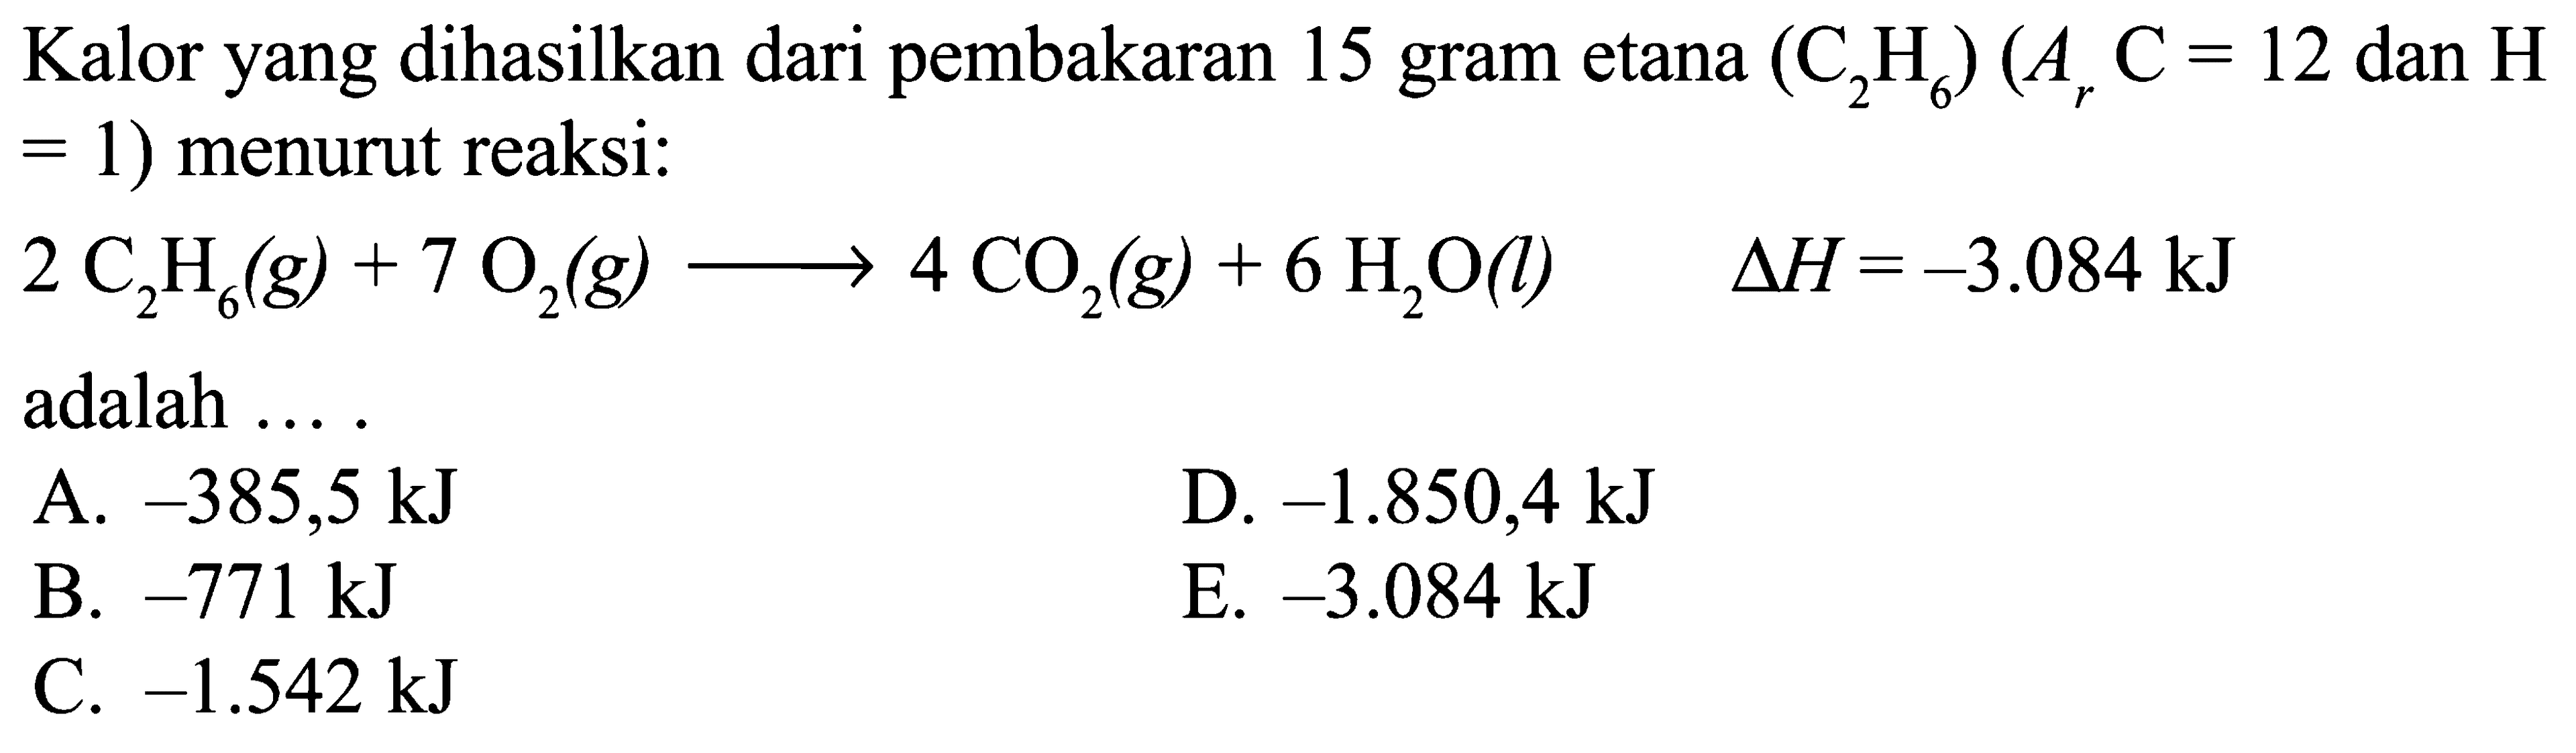 Kalor yang dihasilkan dari pembakaran 15 gram etana (C2H6) (Ar C = 12 dan H = 1) menurut reaksi: 2 C2H6 (g) + 7 O2 (g) -> 4 CO2 (g) + 6 H2O (l) delta H = -3.084 kJ adalah ... .